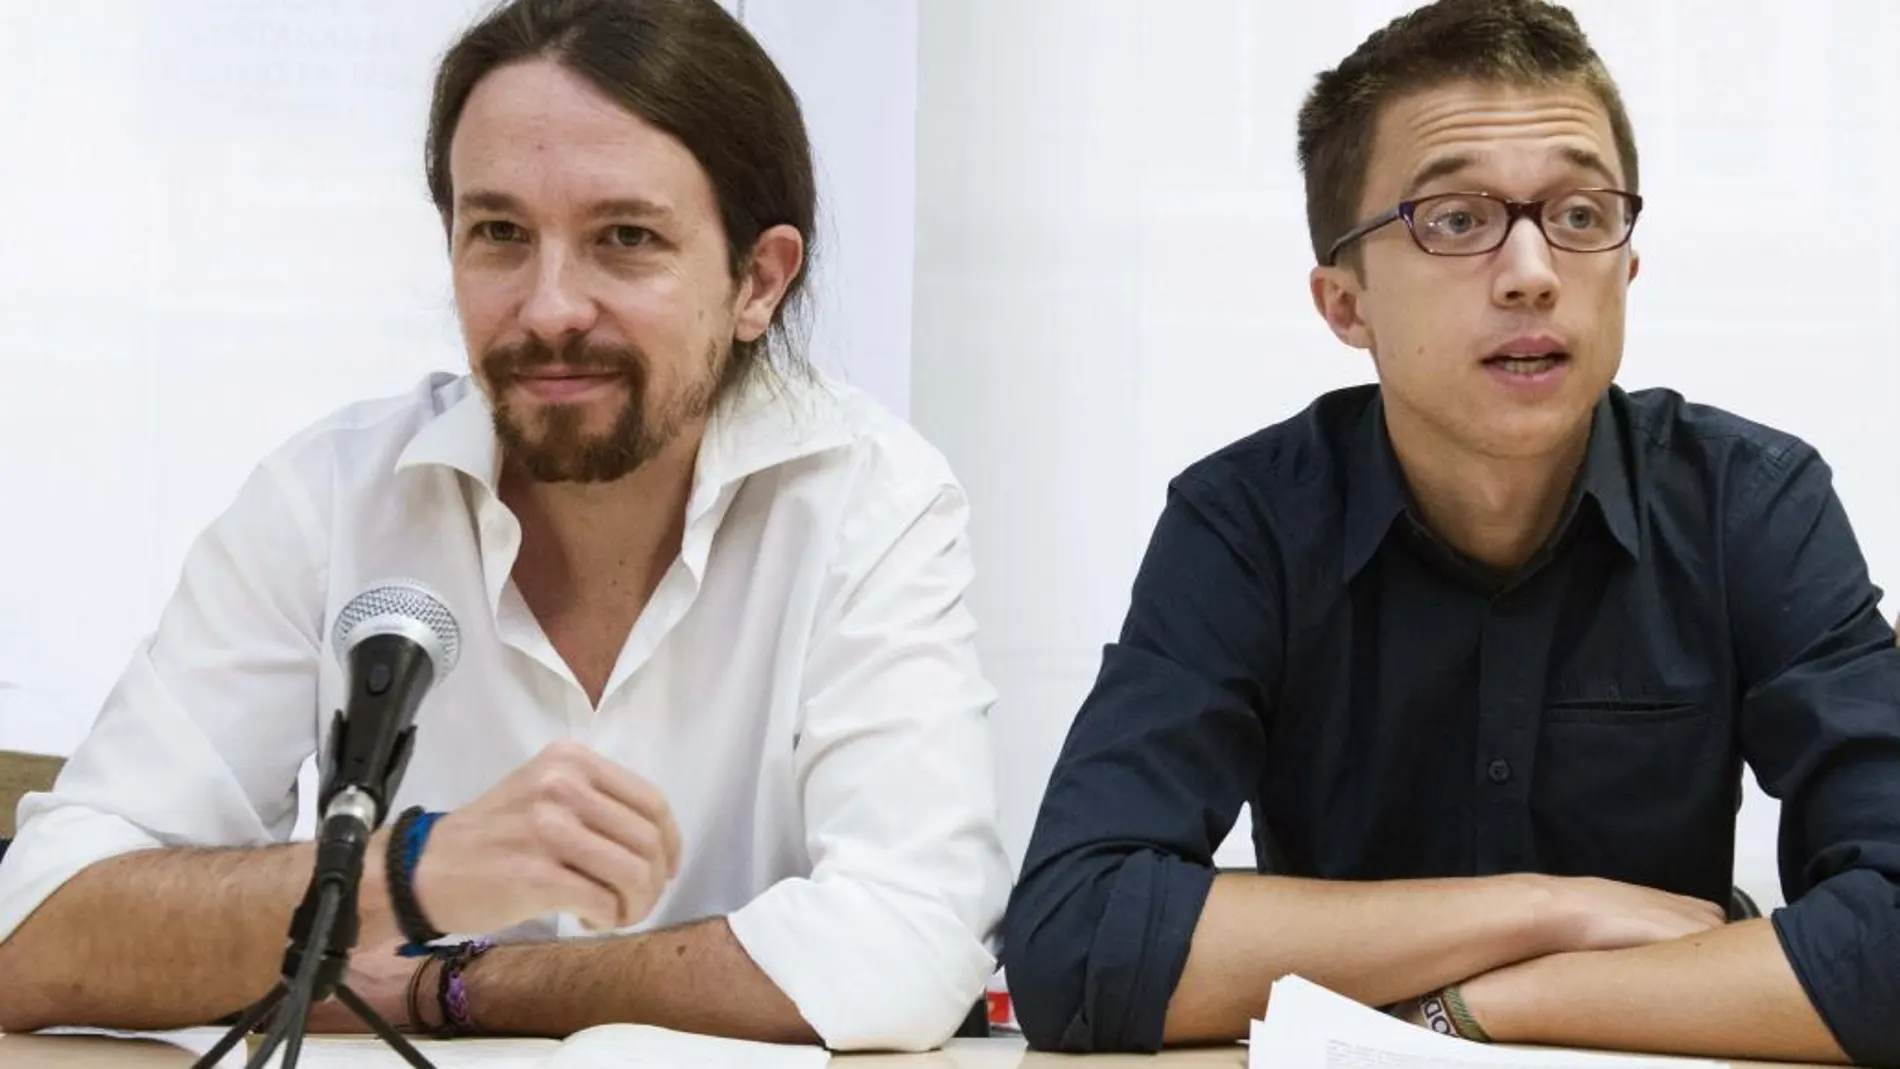 El secretario general de Podemos, Pablo Iglesias, y el secretario político de Podemos, Íñigo Errejón